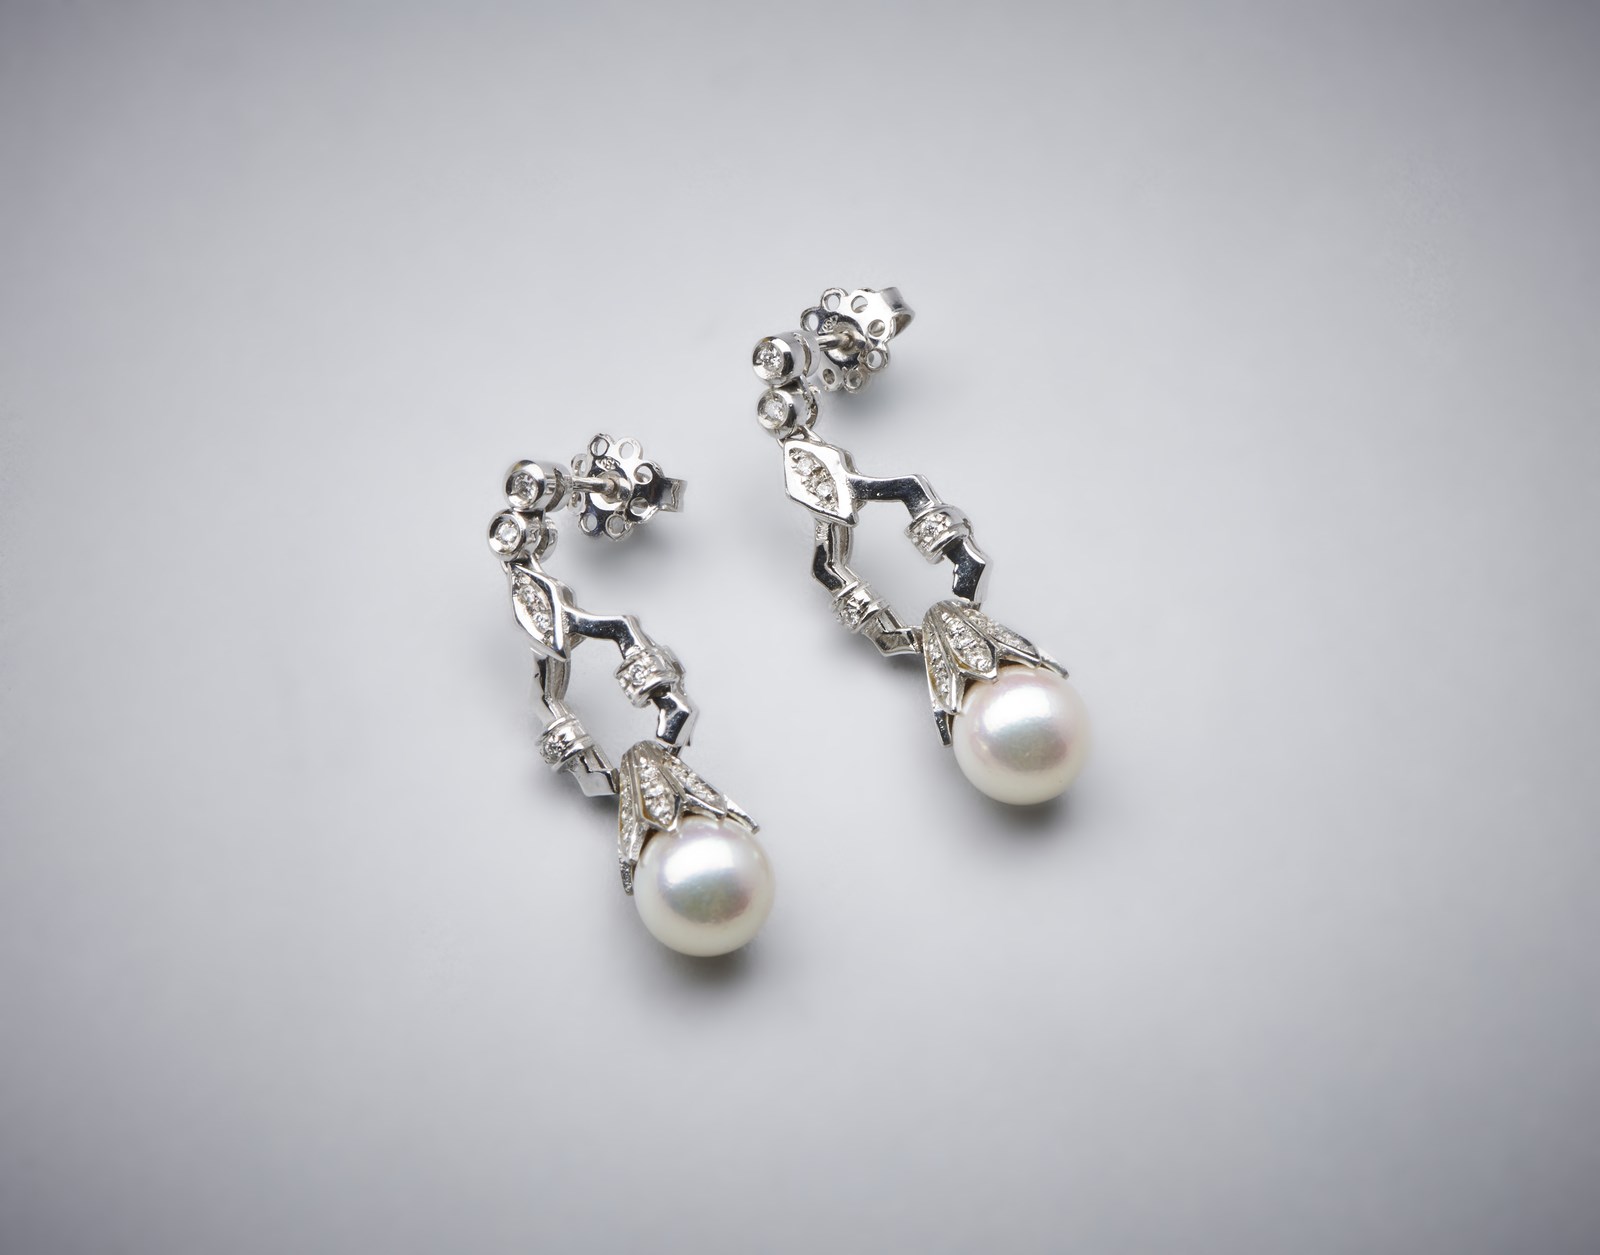 Orecchini pendenti in oro bianco 750/1000 con coppia di perle sferiche bianche coltivate di mm 8,50 e piccoli diamanti bianchi di taglio misto di 0,80 ct. circa. (. )